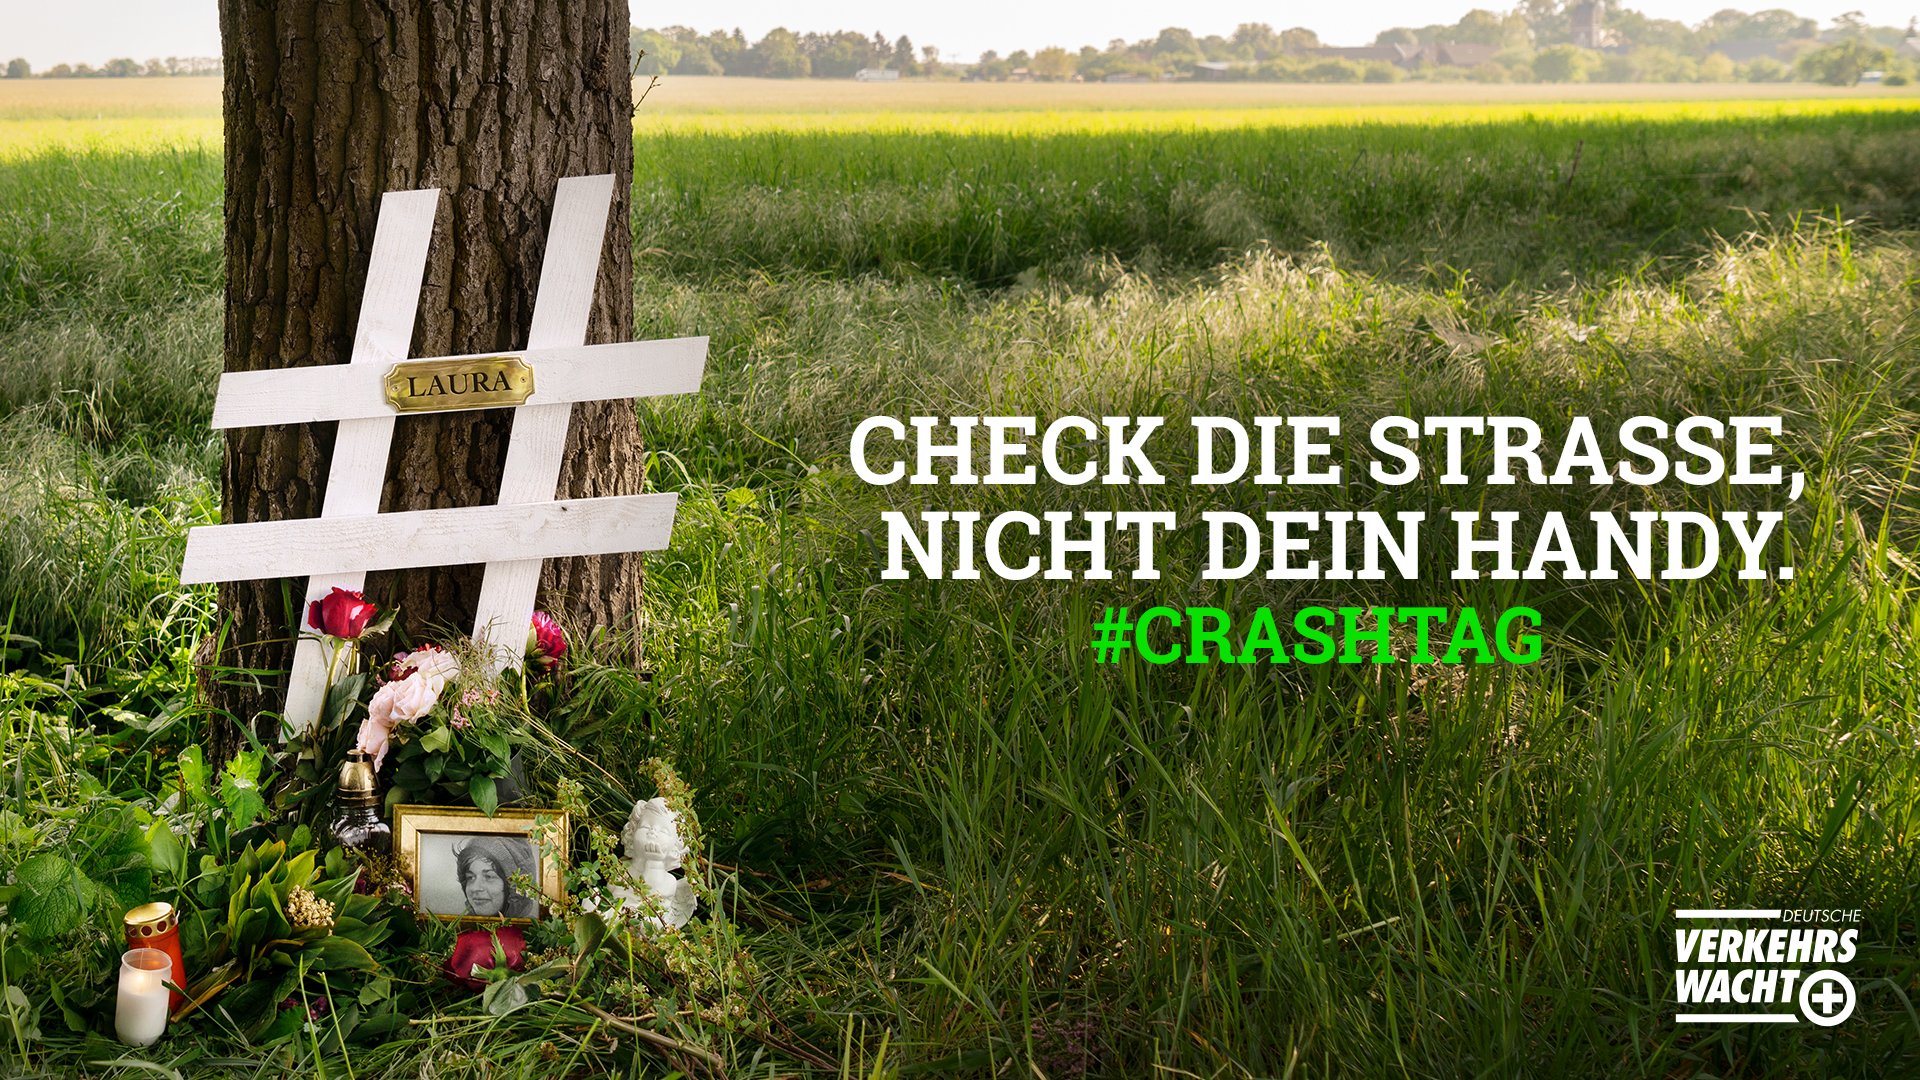 CRASHTAG: Deutsche Verkehrswacht startet Social Media Offensive für bundesweite Unfallpräventionsaktion